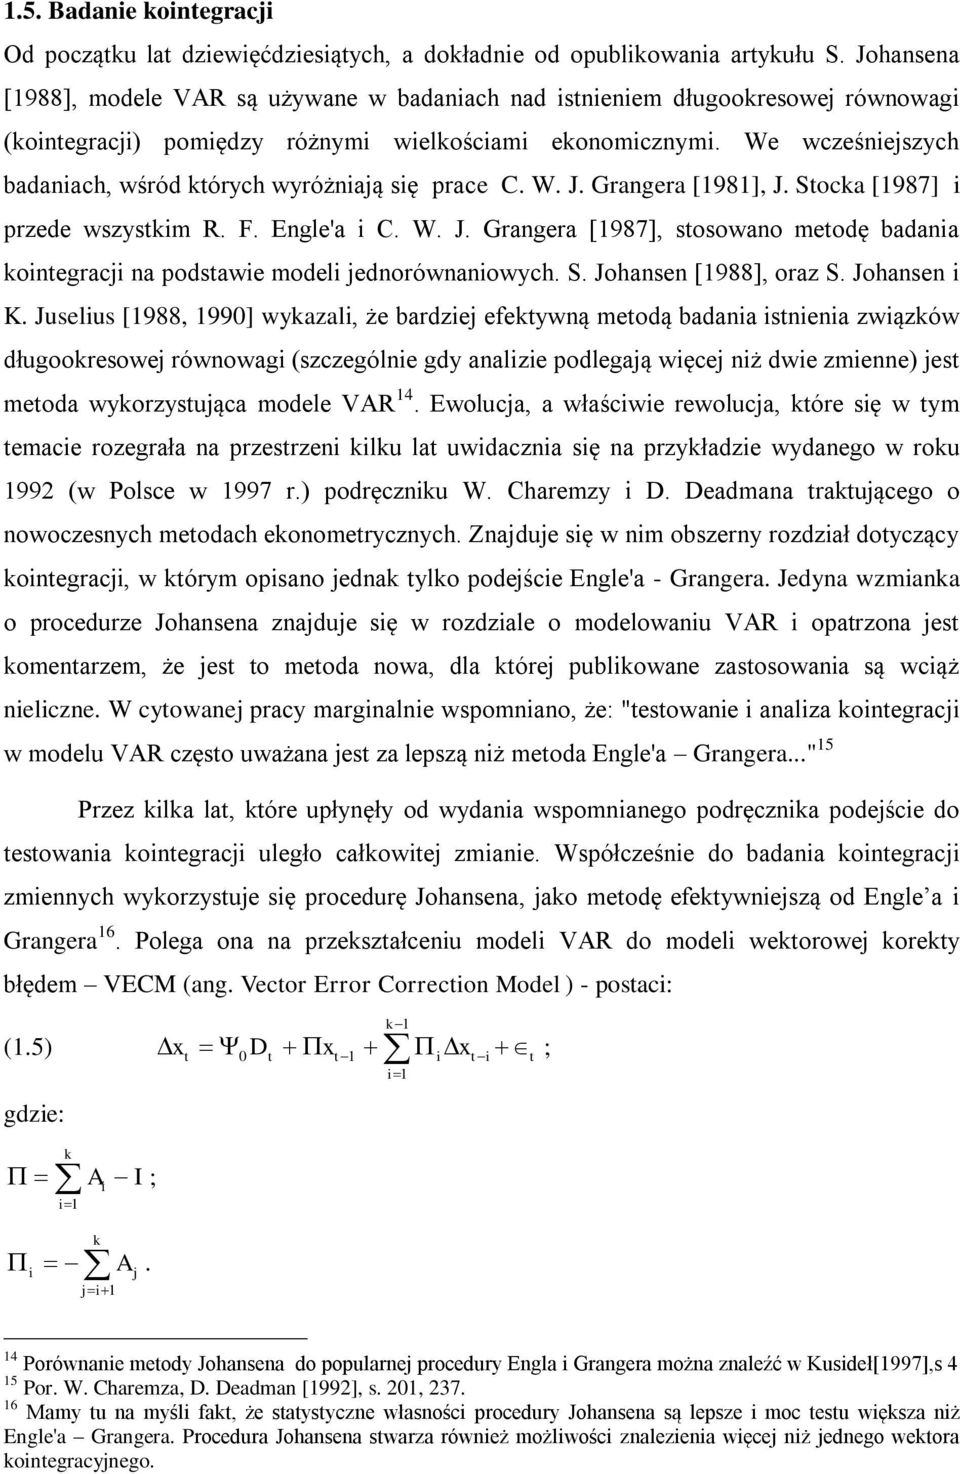 We wcześniejszych badaniach, wśród których wyróżniają się prace C. W. J. Grangera [1981], J. Stocka [1987] i przede wszystkim R. F. Engle'a i C. W. J. Grangera [1987], stosowano metodę badania kointegracji na podstawie modeli jednorównaniowych.